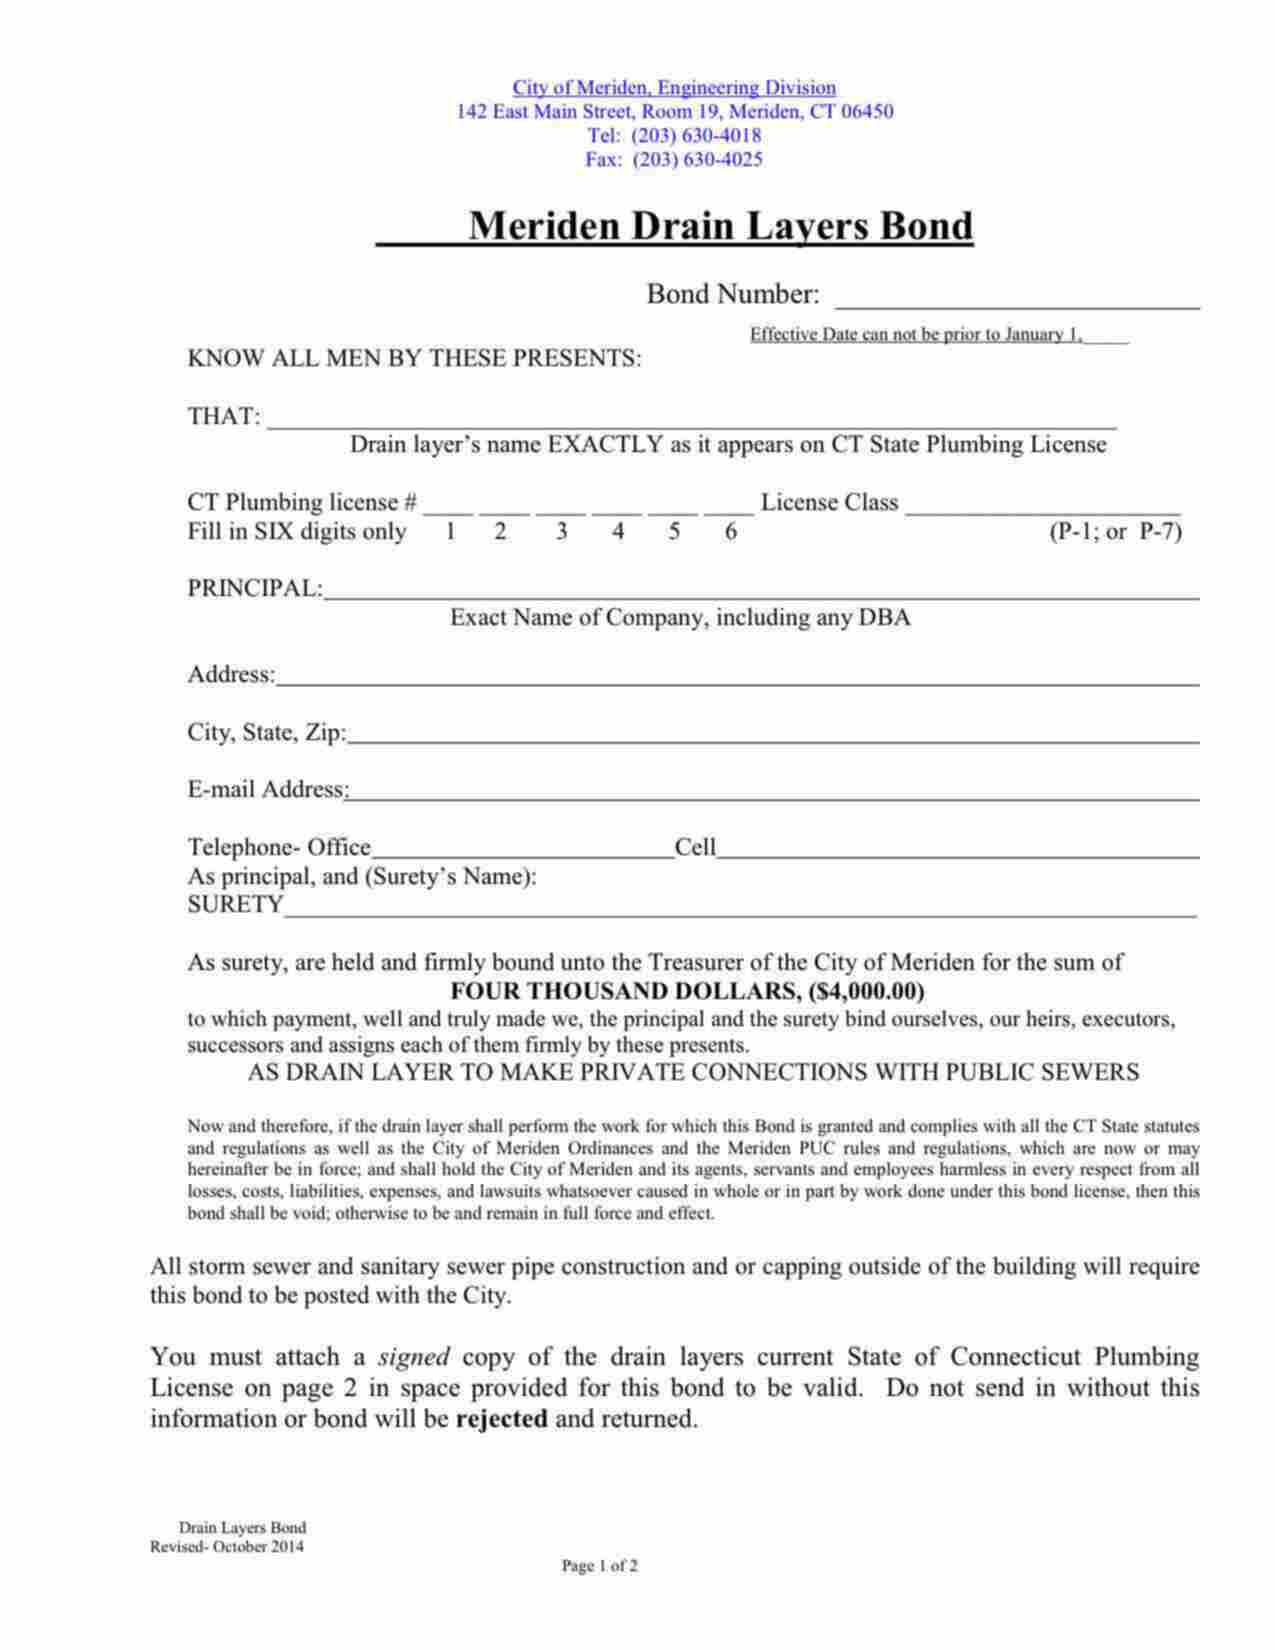 Connecticut Drain Layer - P-1 License Bond Form